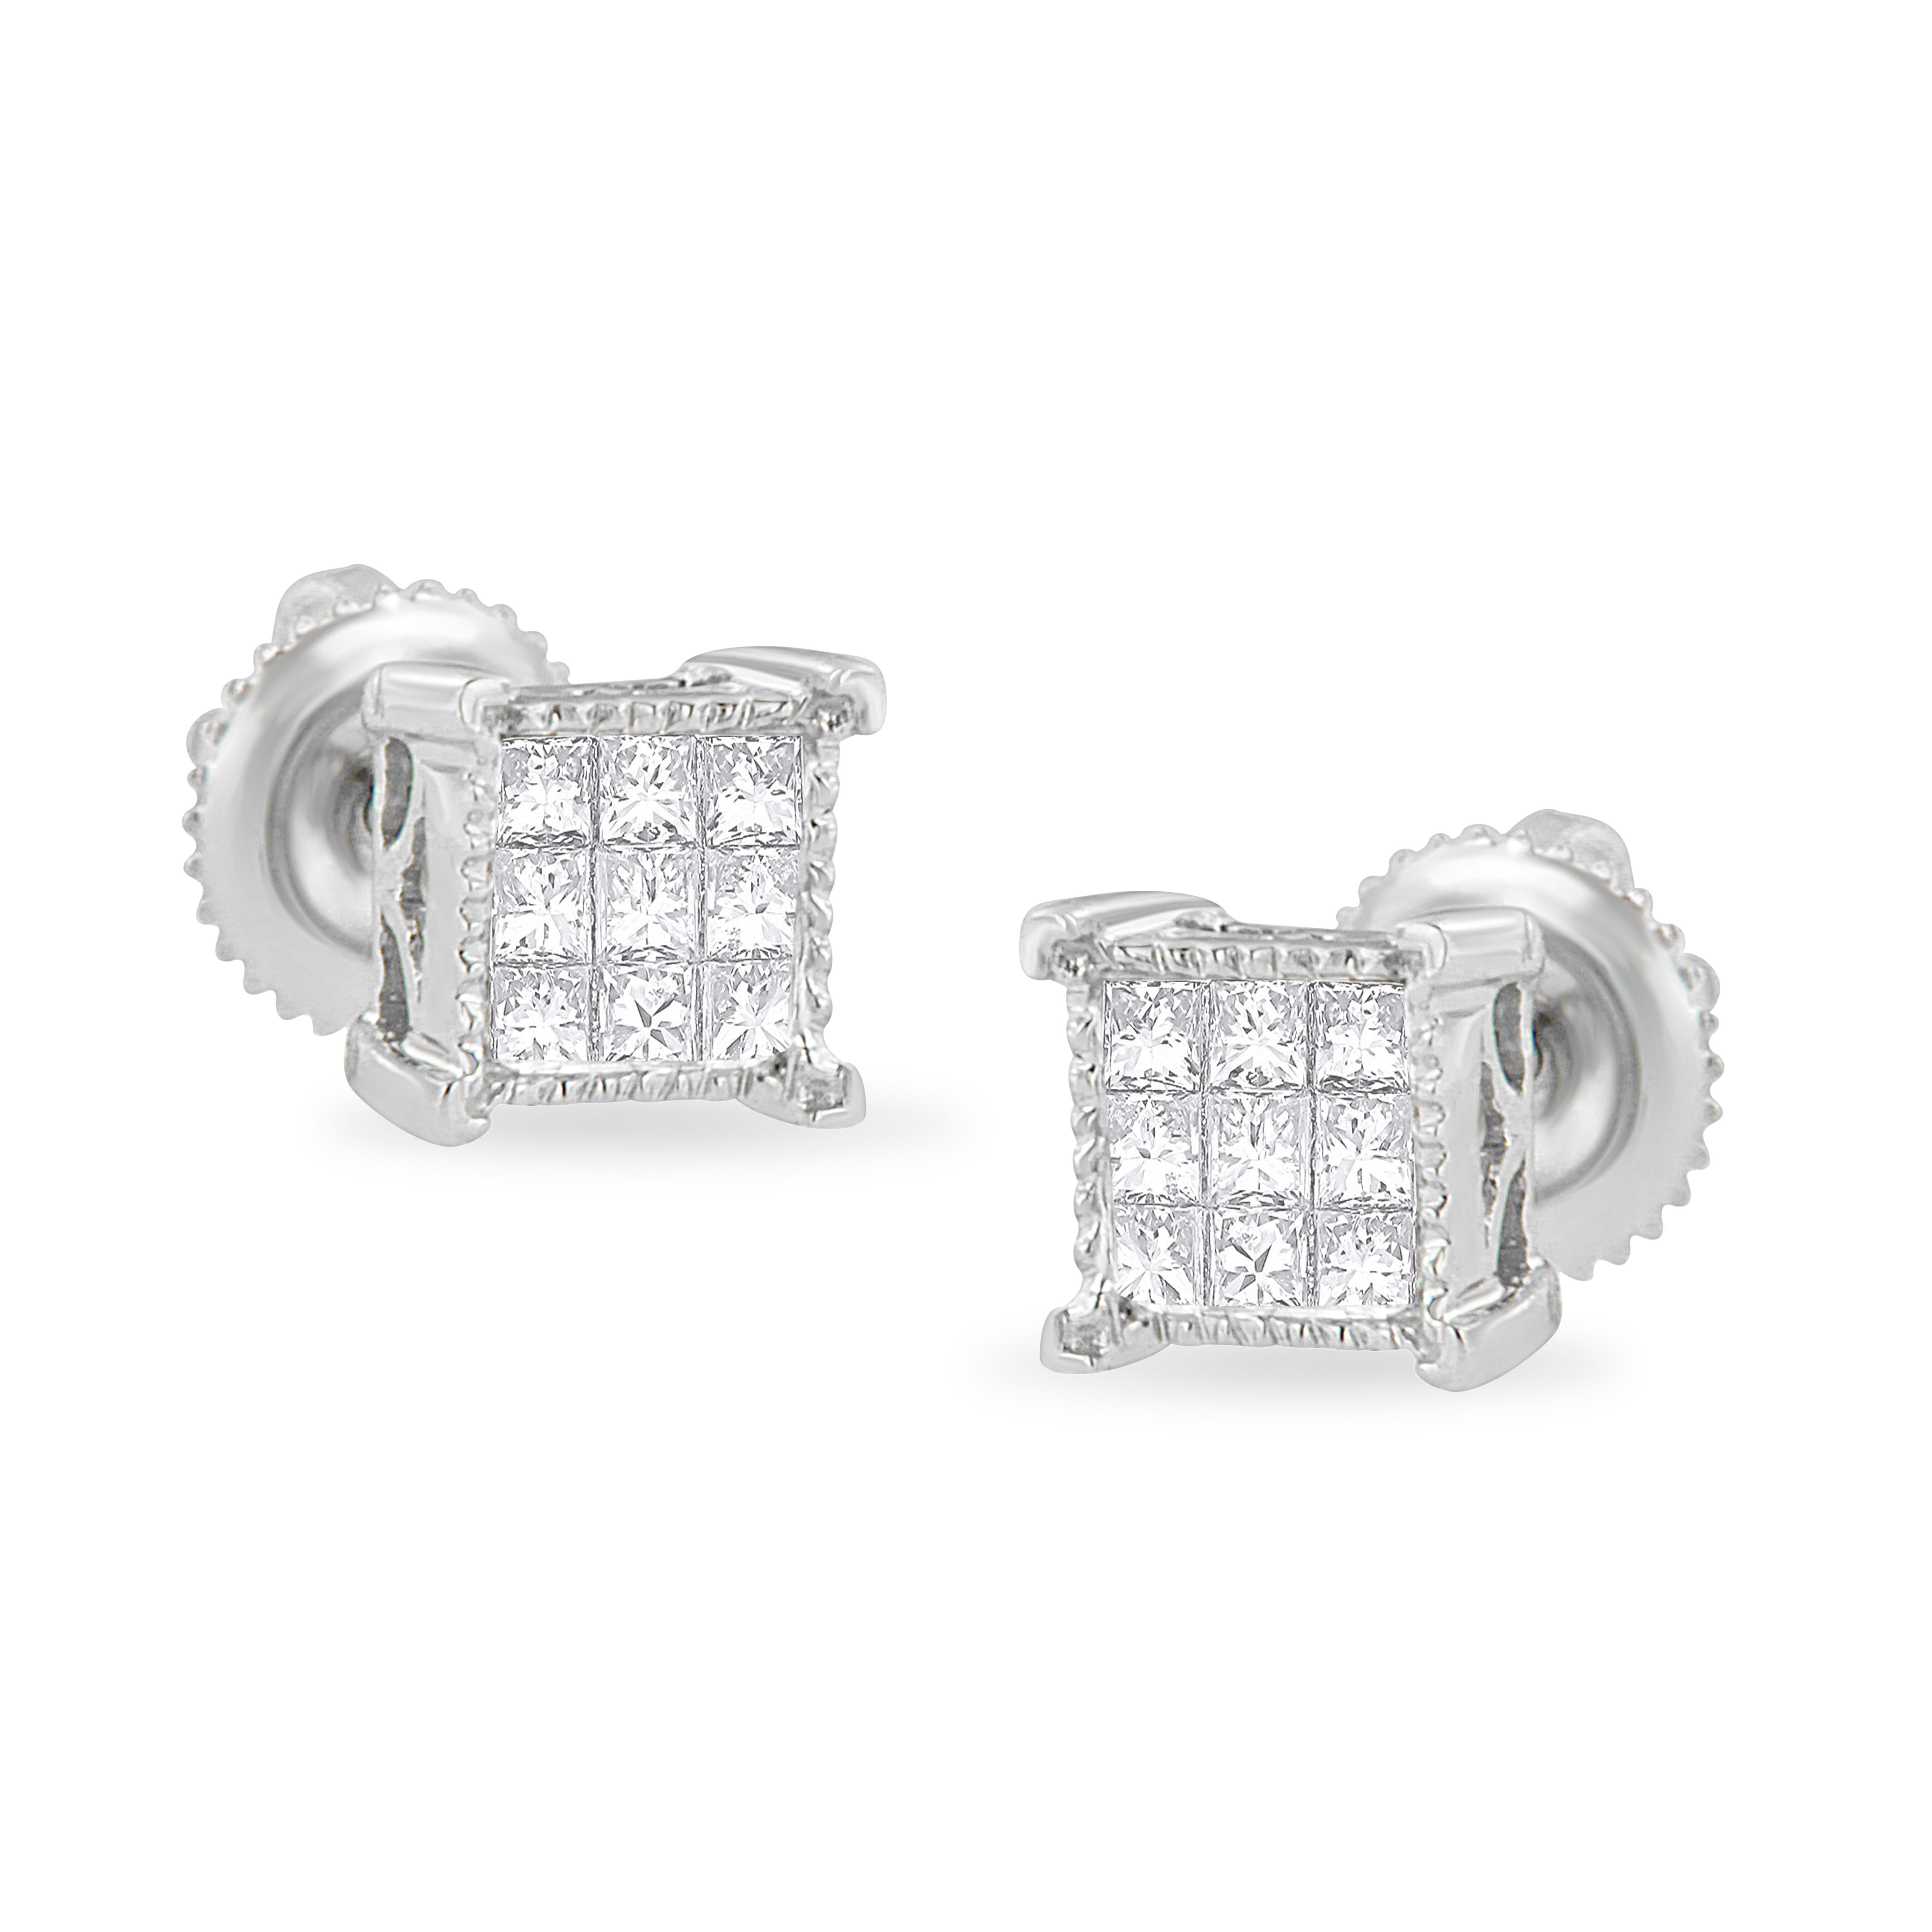 3 carat princess cut diamond earrings